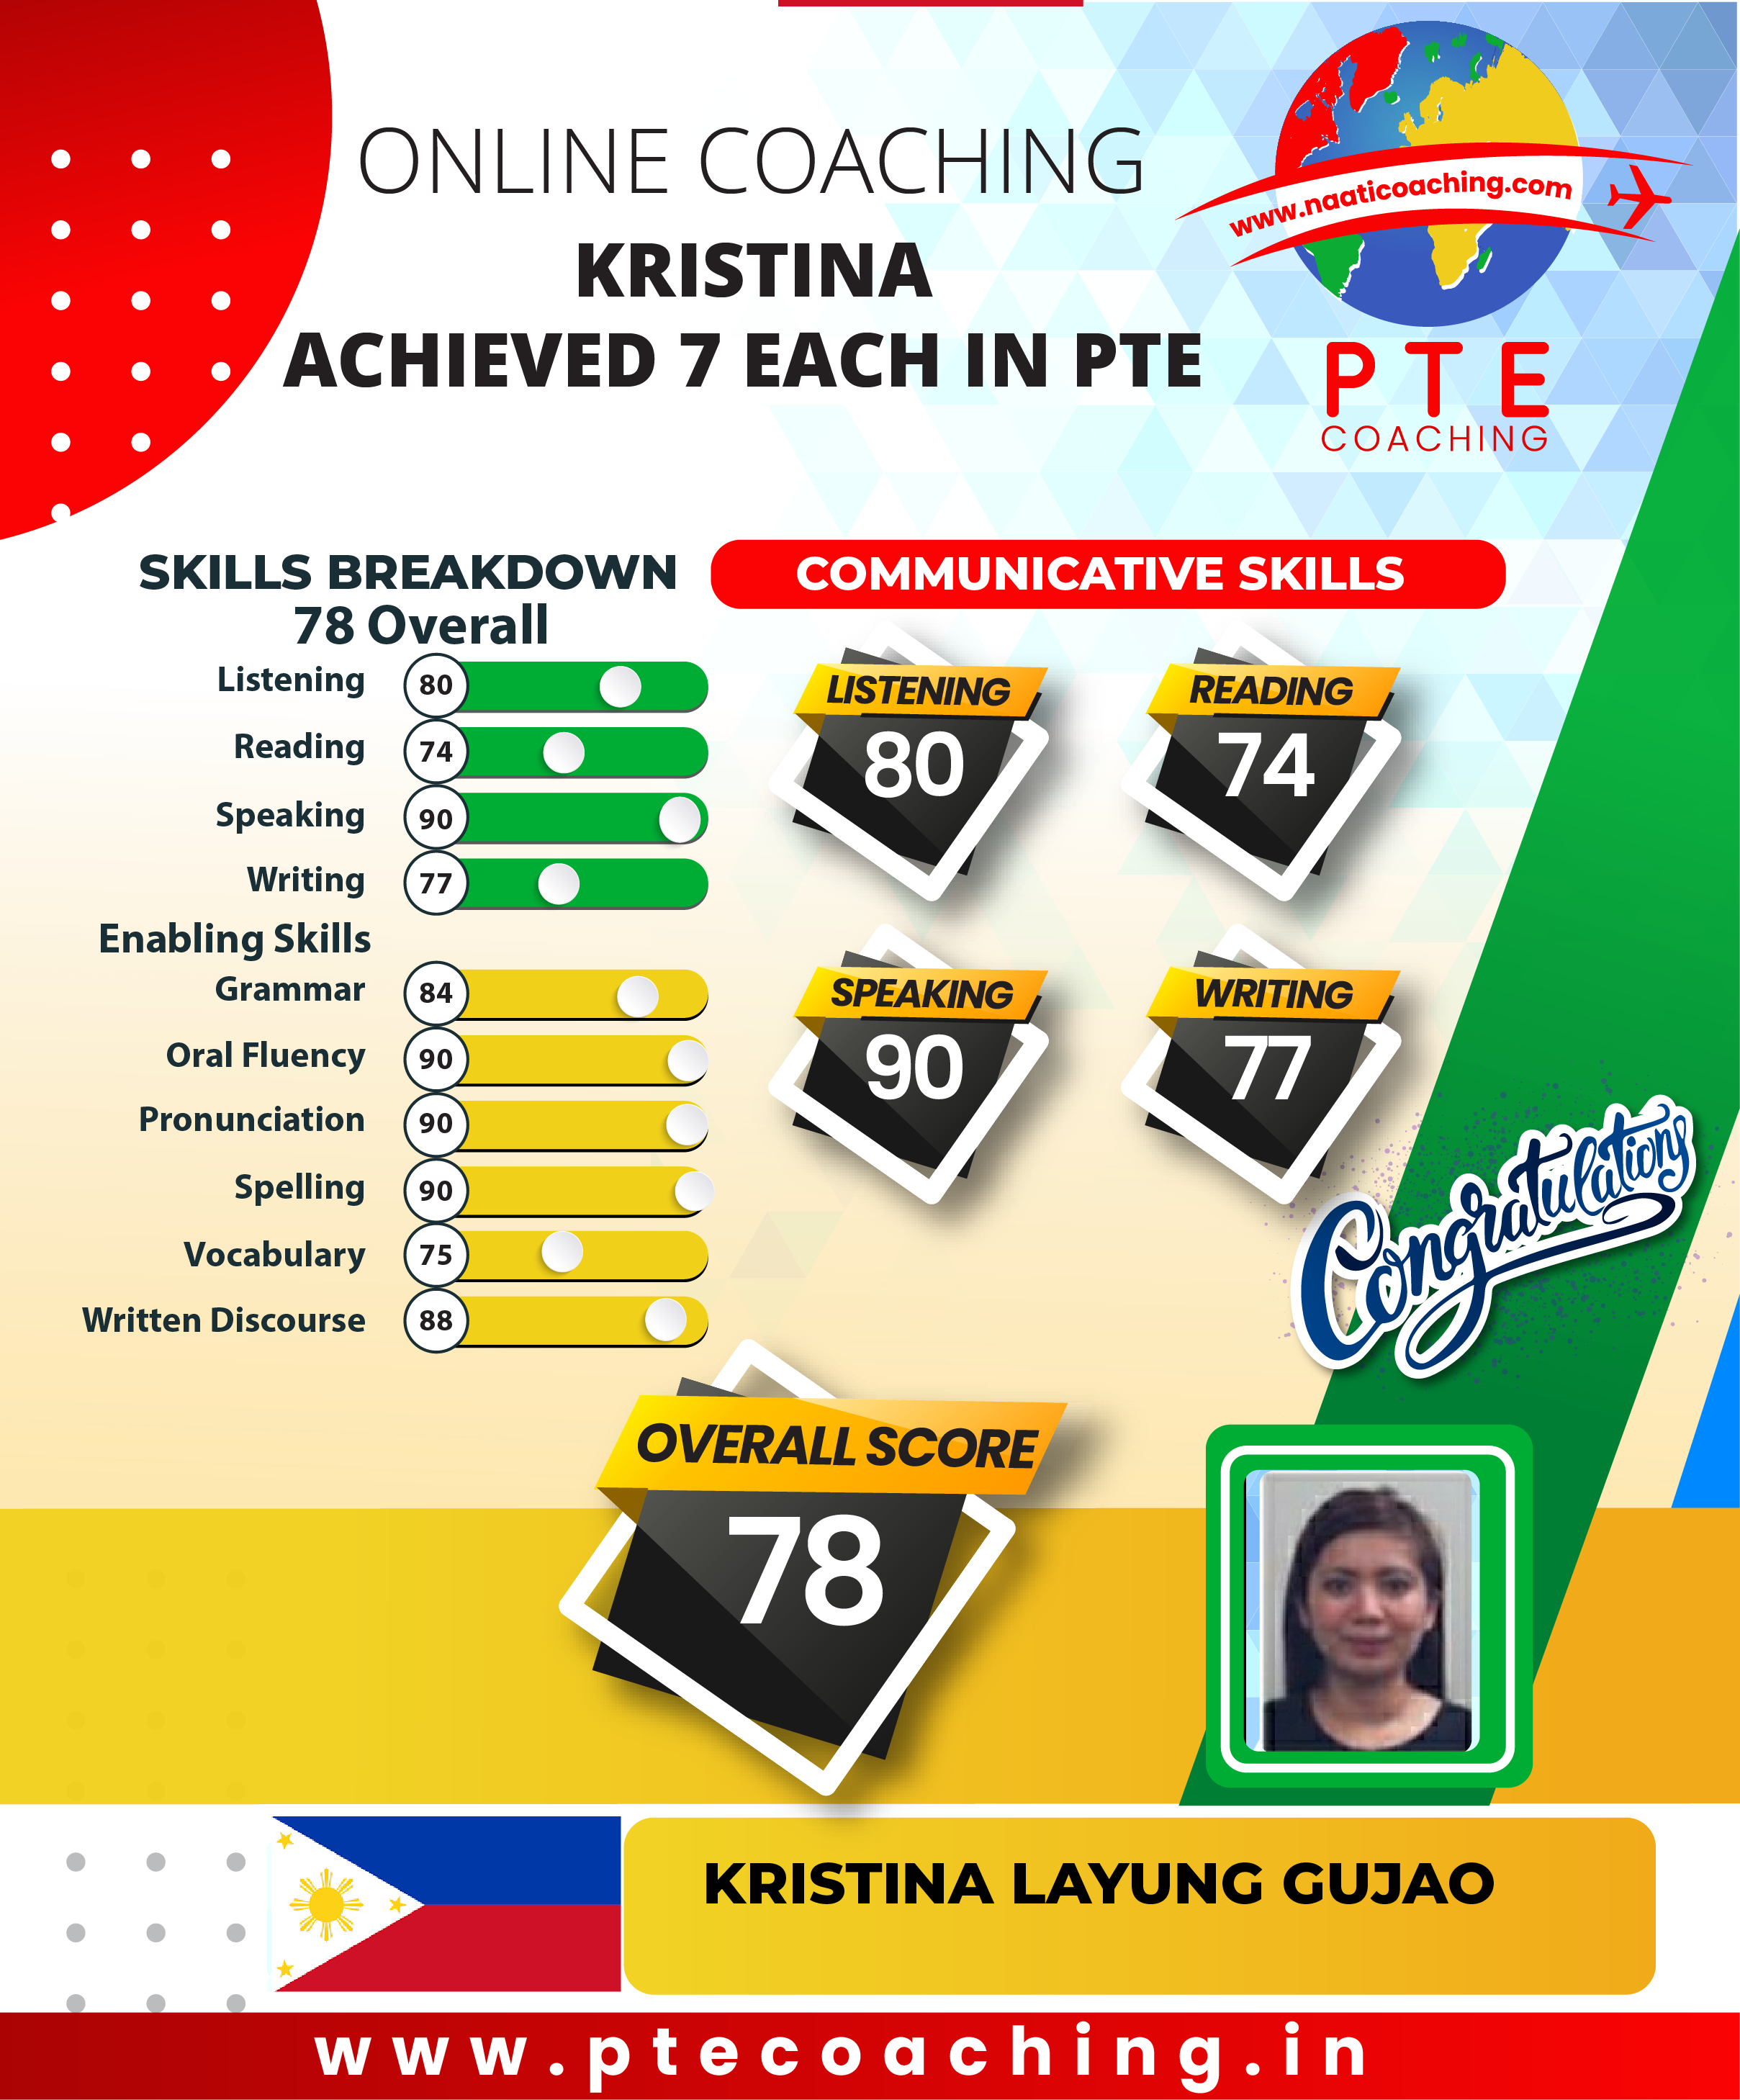 PTE Coaching Scorecard - Kristina achieved 7 each in PTE